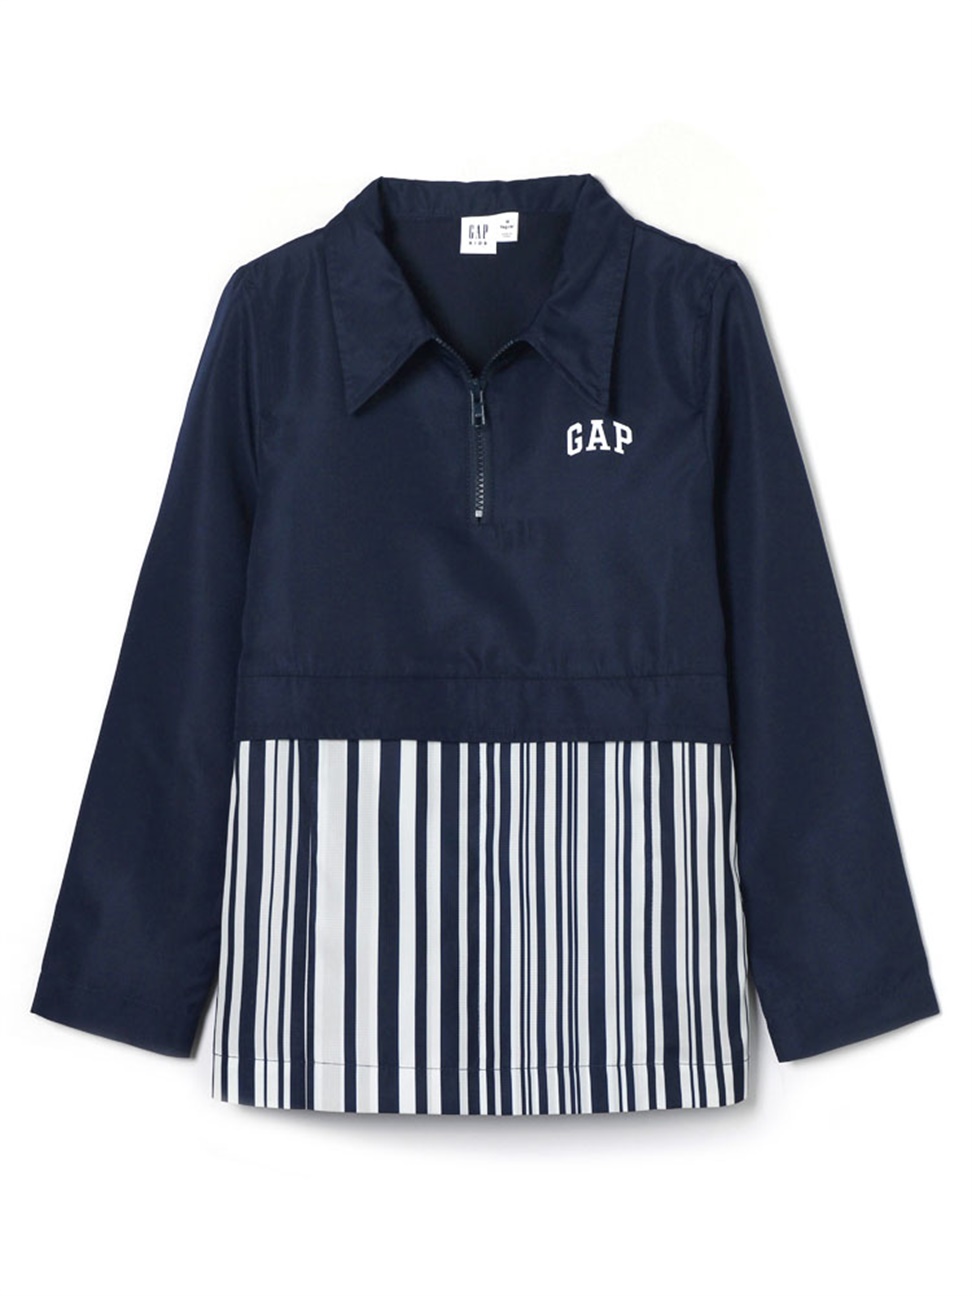 男童裝|Gap x CONSTANCE TSUI聯名 拼接設計拉鍊外套-海軍淺藍